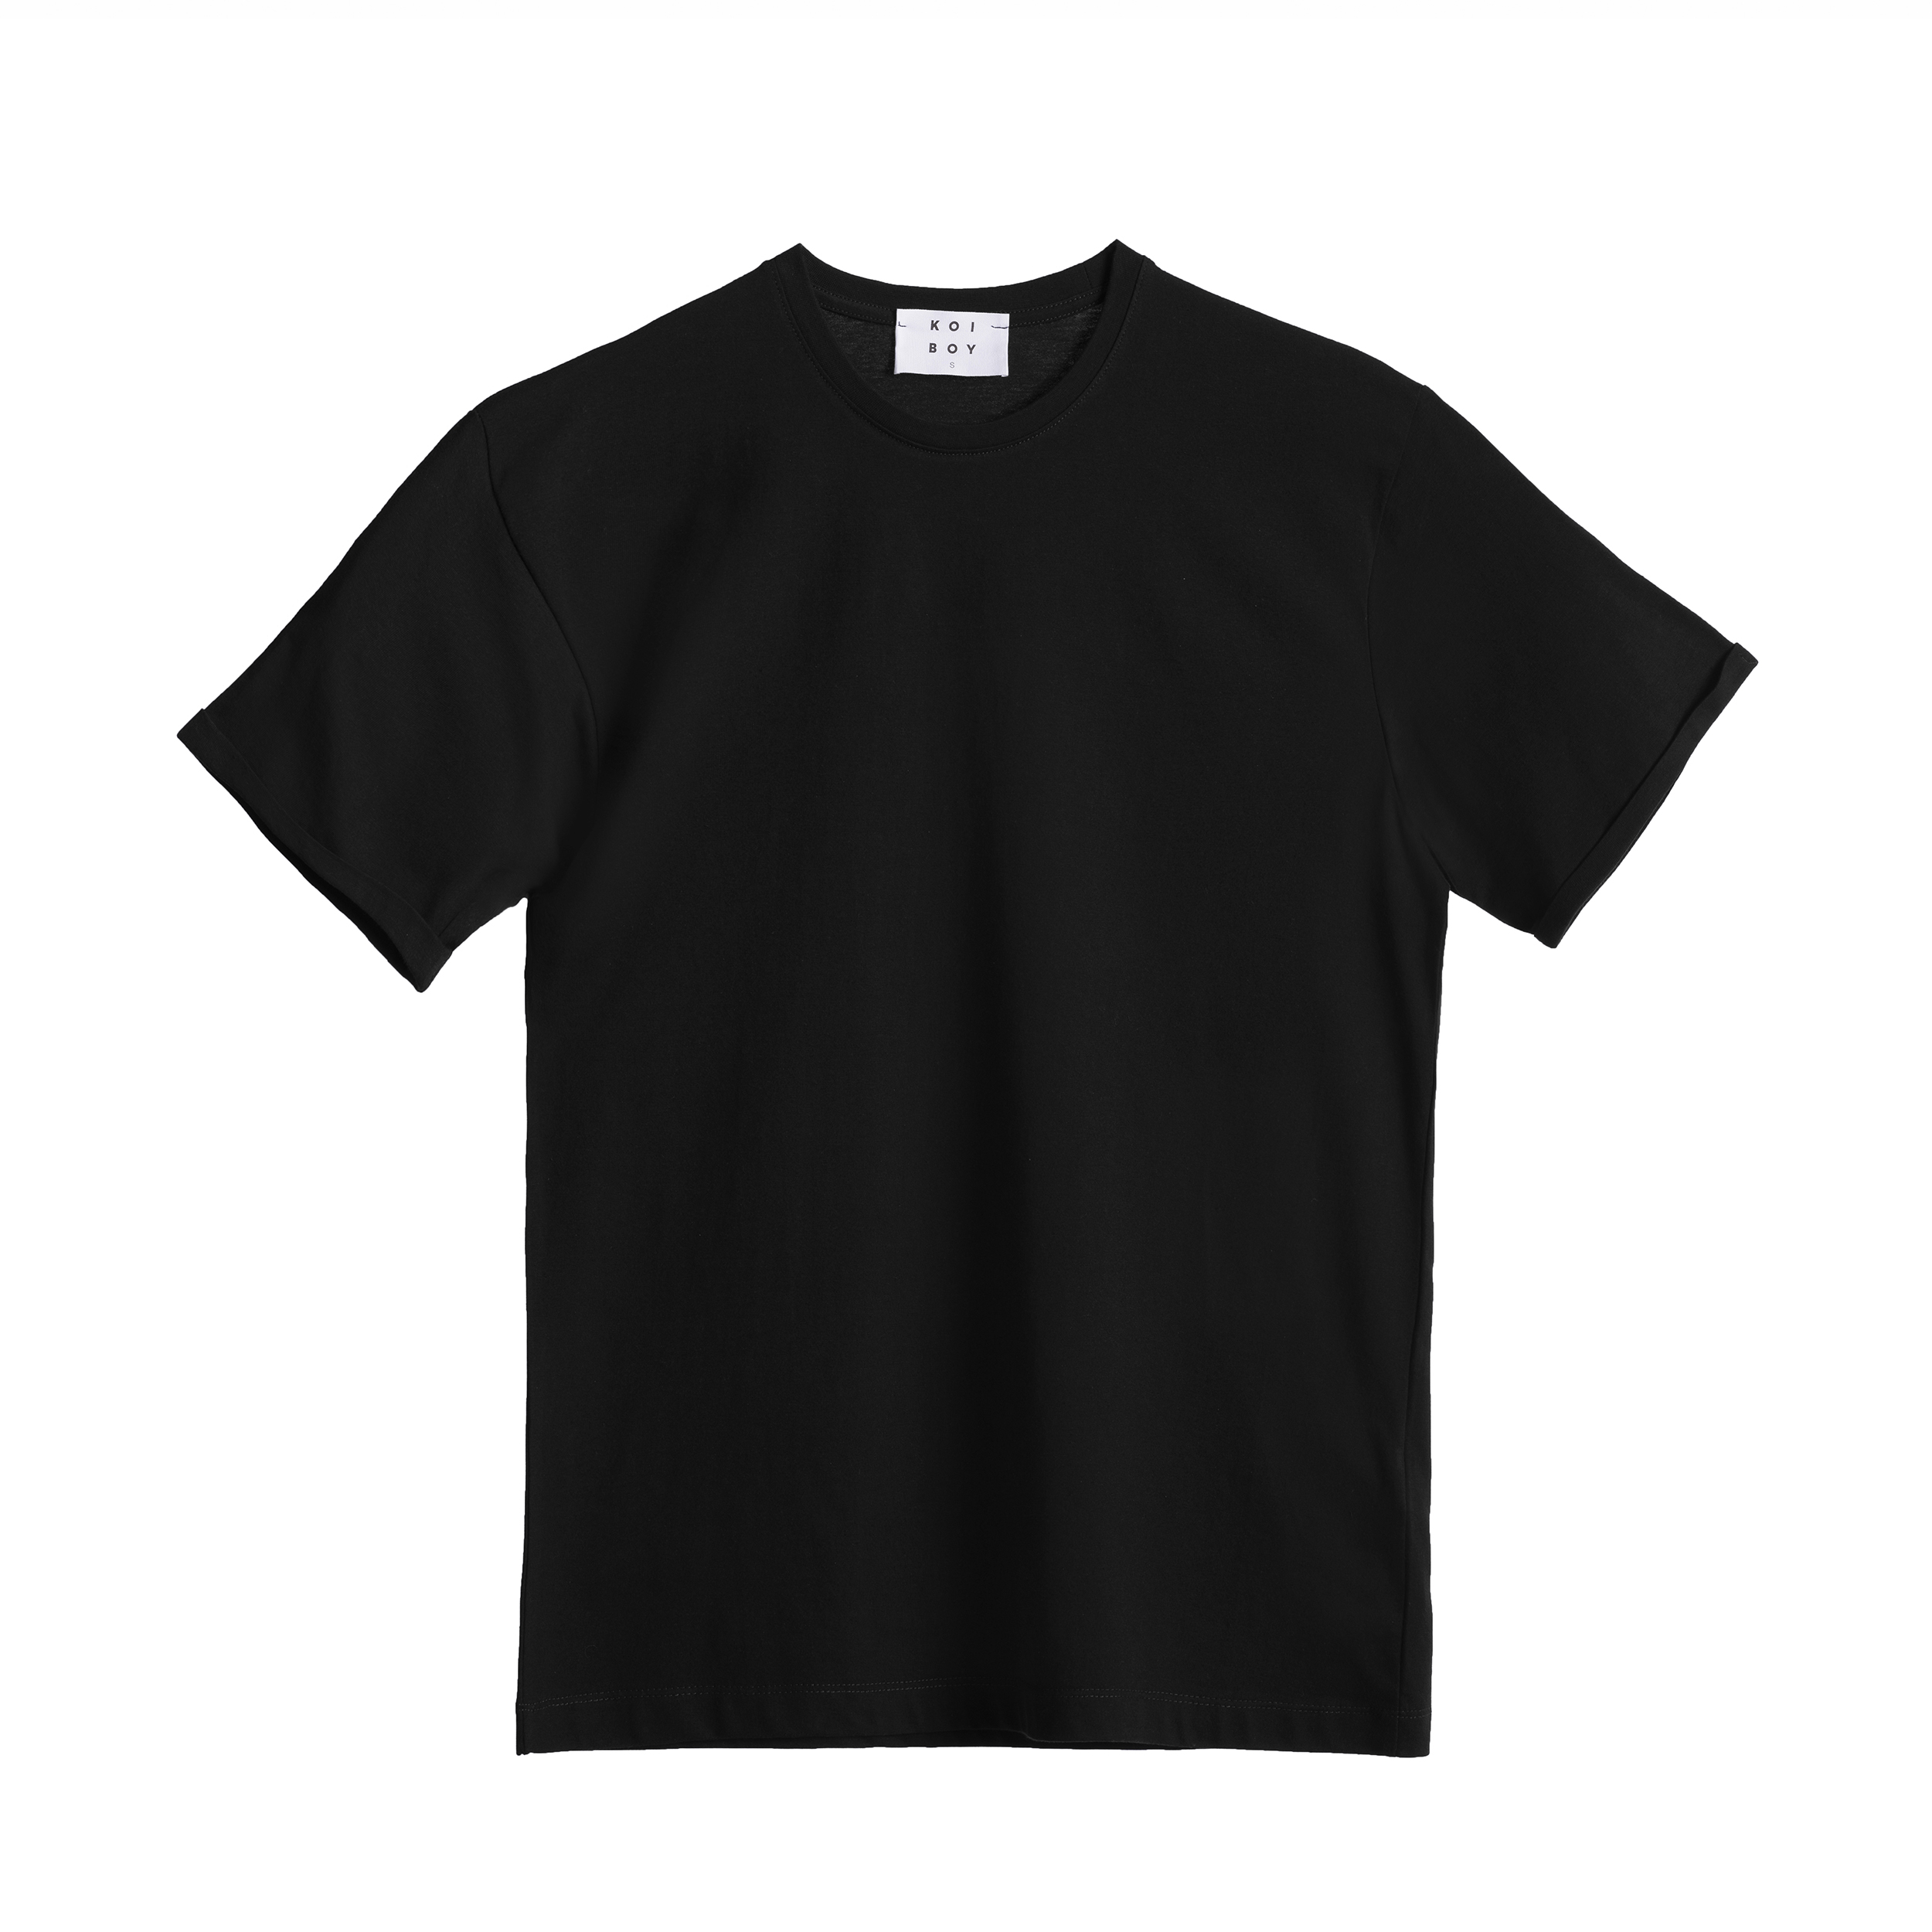 تی شرت آستین کوتاه مردانه کوی مدل 432 اسلیم فیت رنگ مشکی -  - 1